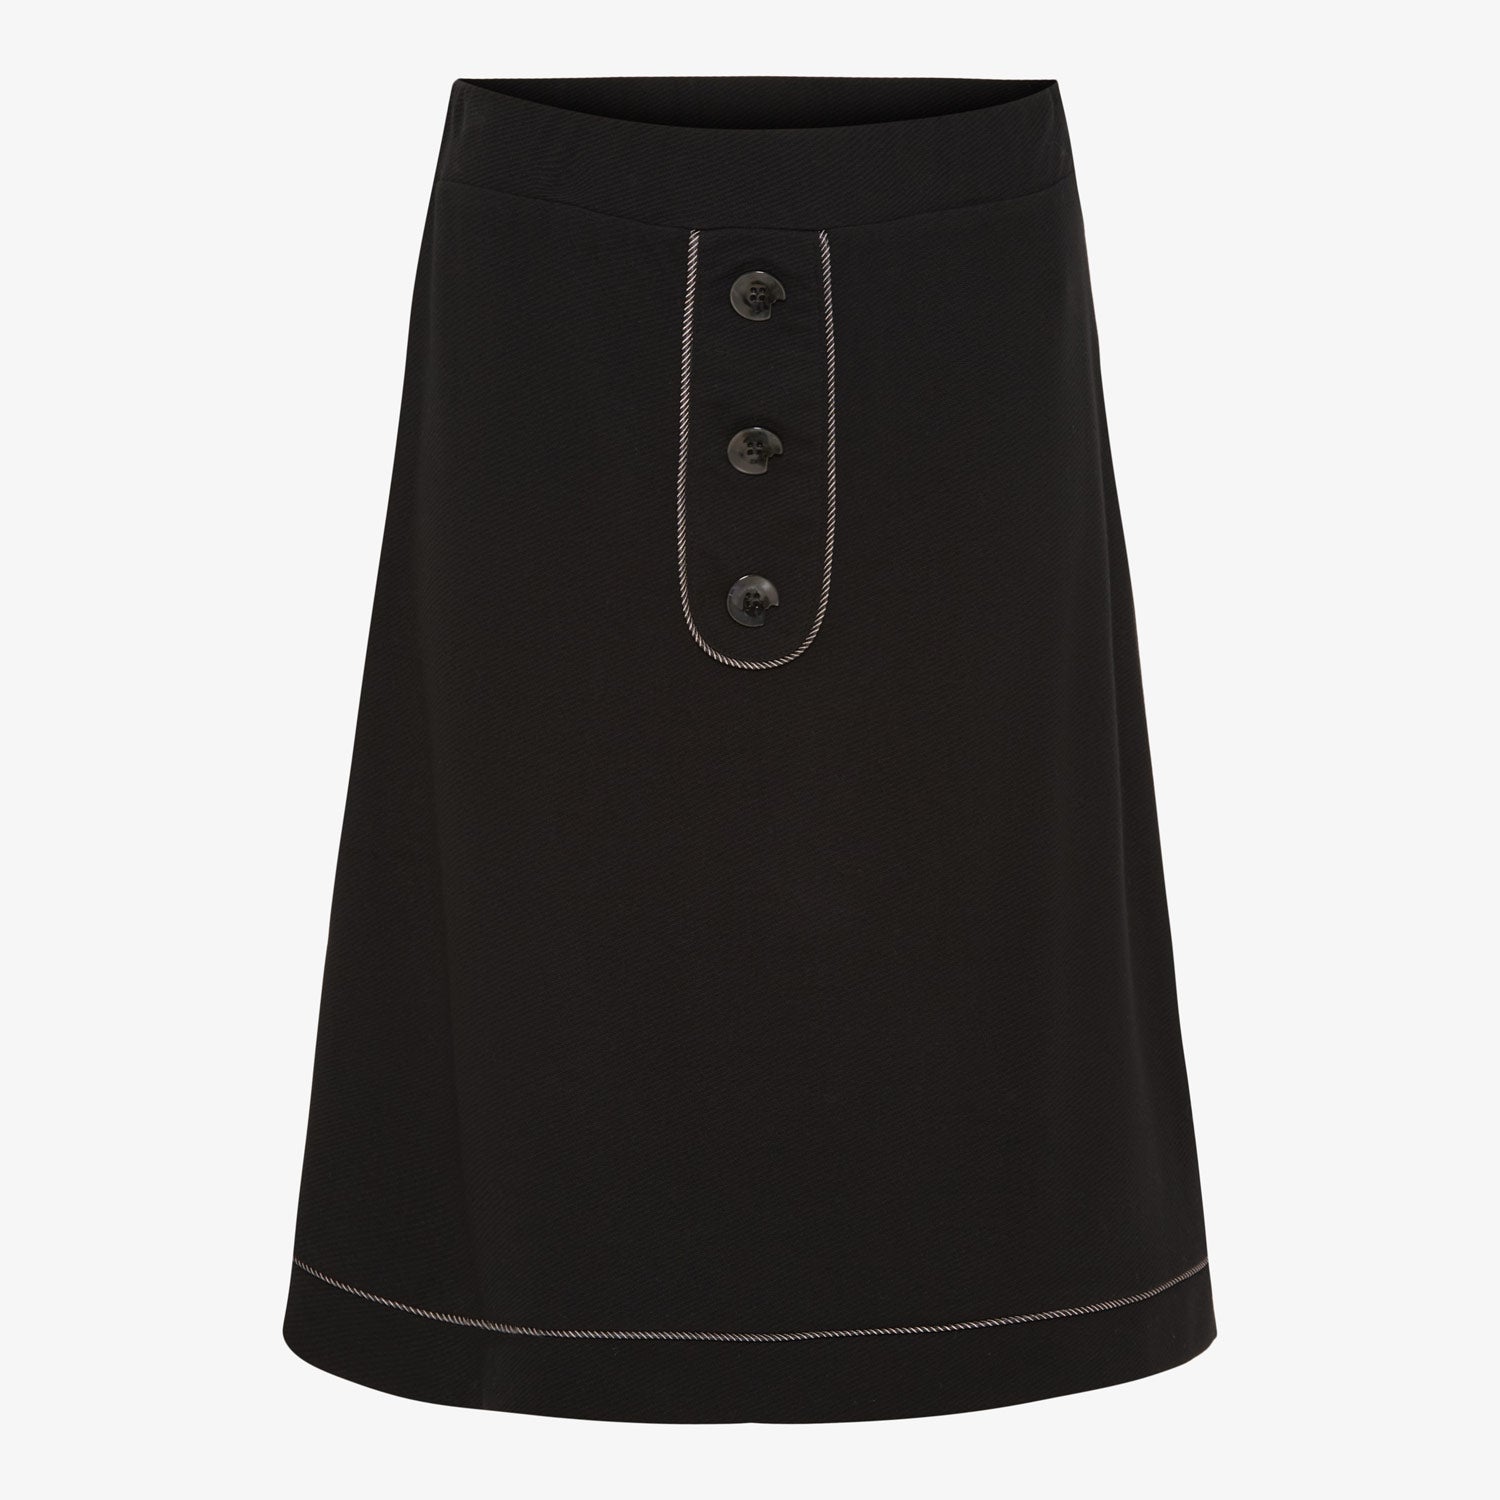 Blackville Skirt